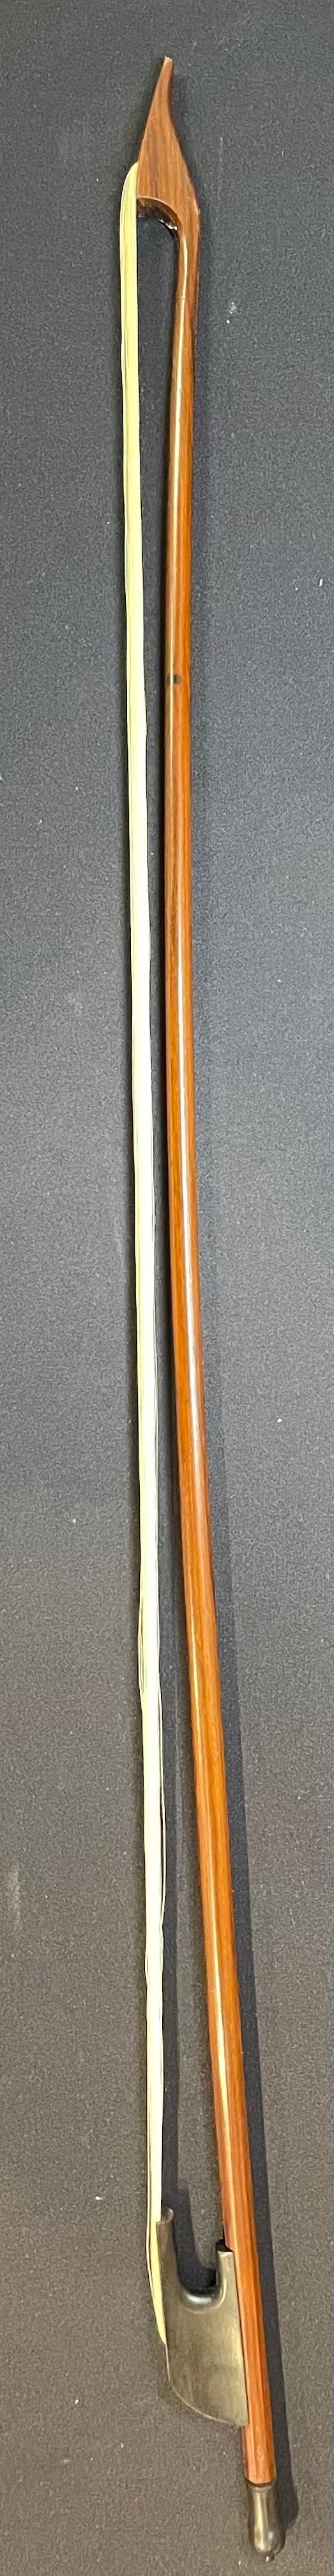 4/4 Cello Bow - Baroque TZ Model